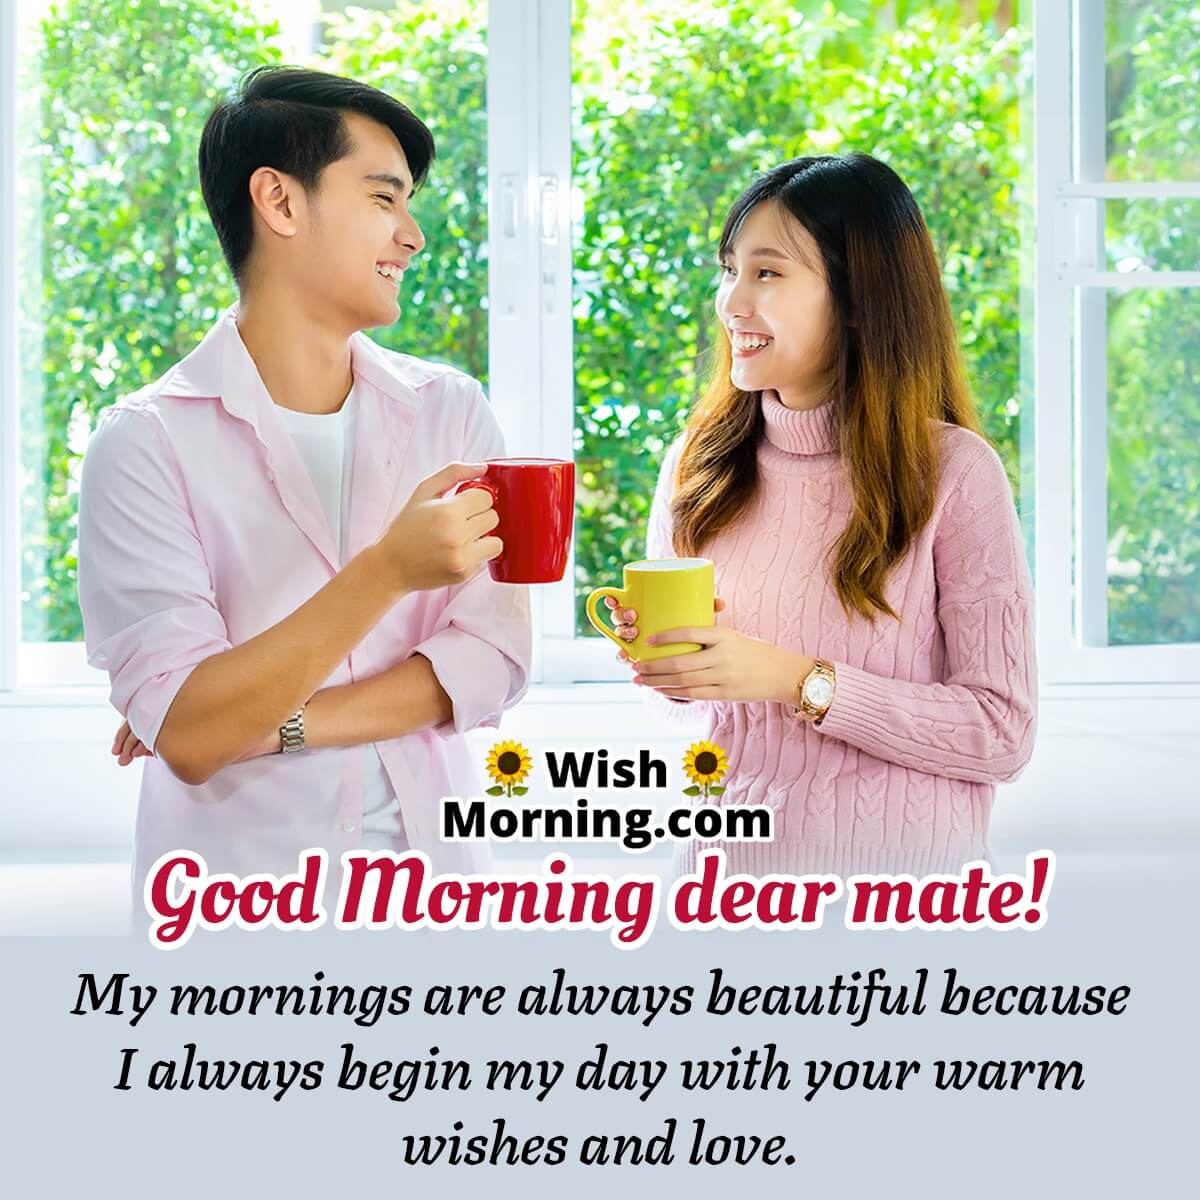 Good Morning Dear Mate